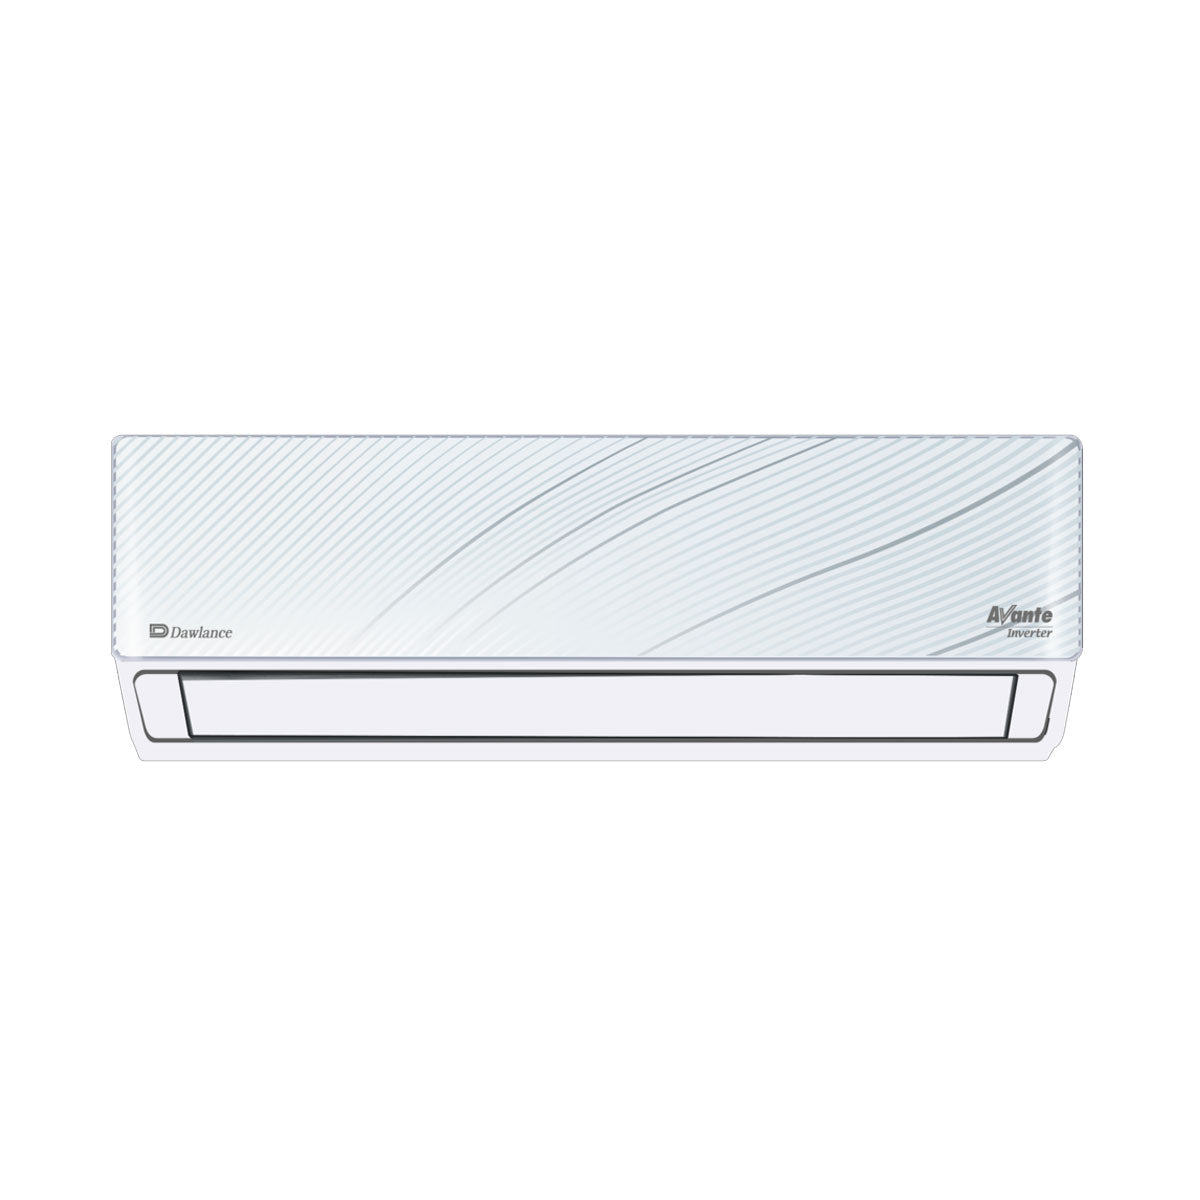 Dawlance Air Conditioner 1.5 Ton - Avante 30 Inverter (Elegant White)